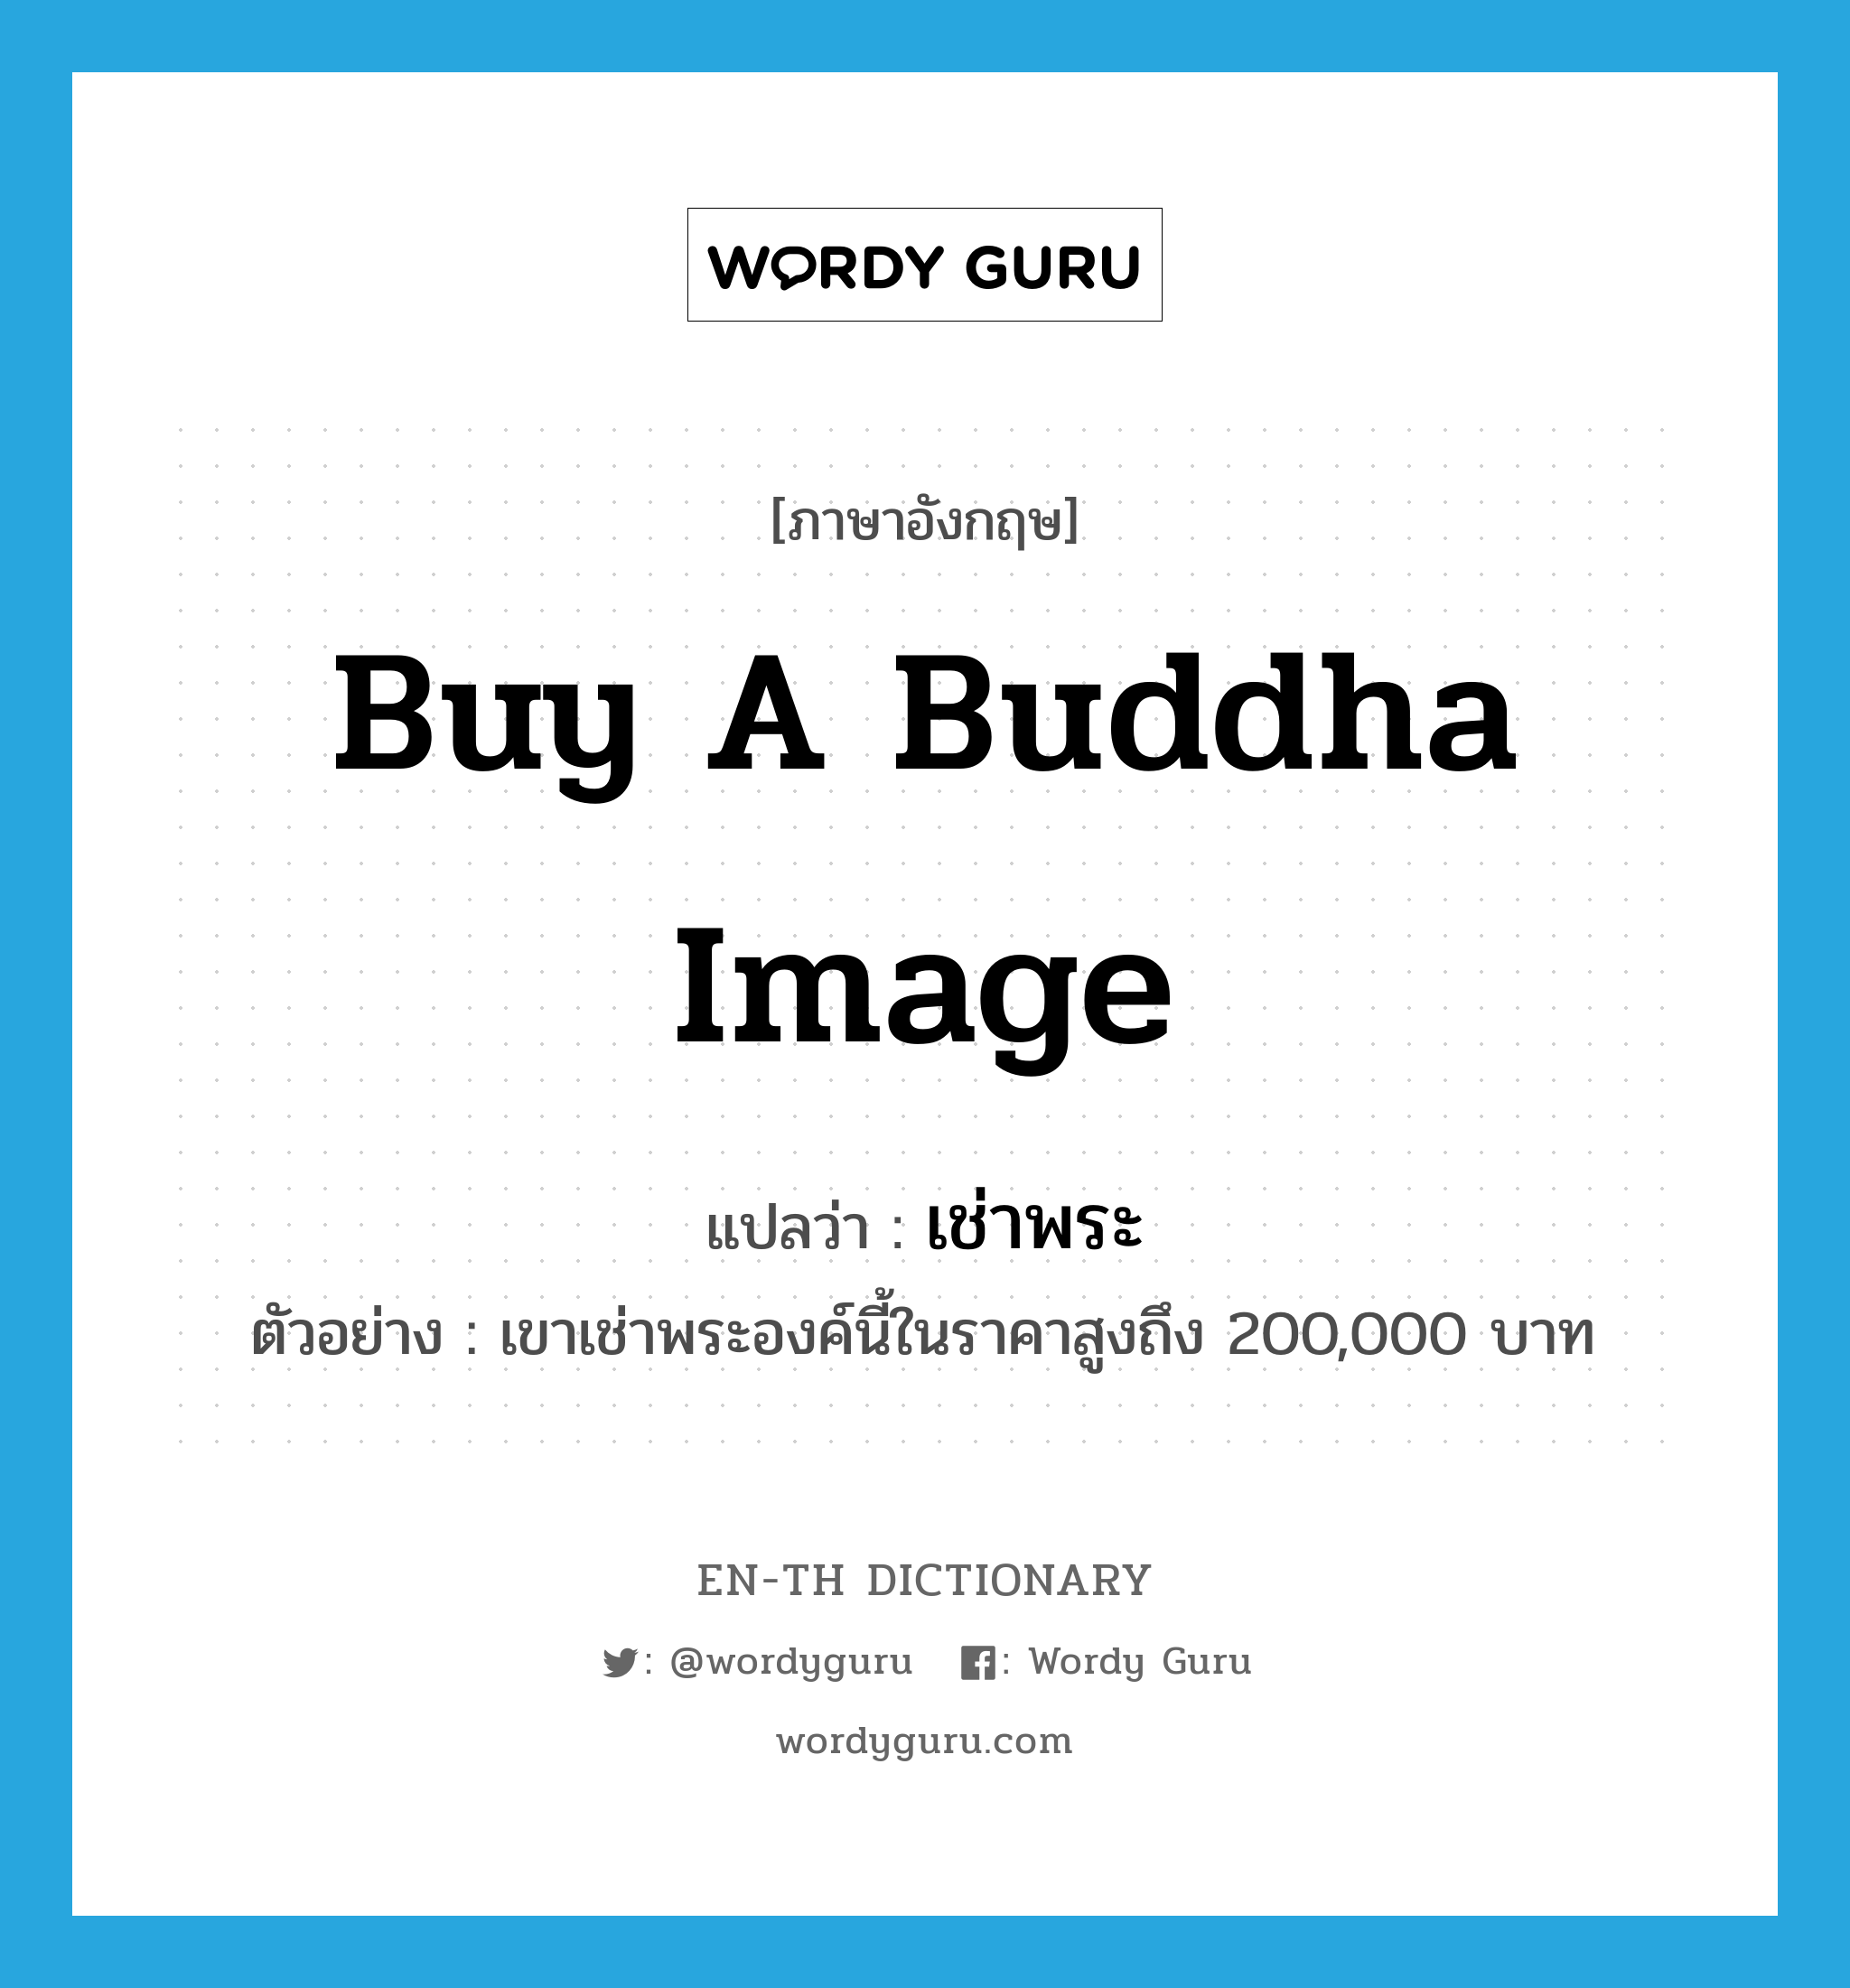 เช่าพระ ภาษาอังกฤษ?, คำศัพท์ภาษาอังกฤษ เช่าพระ แปลว่า buy a Buddha image ประเภท V ตัวอย่าง เขาเช่าพระองค์นี้ในราคาสูงถึง 200,000 บาท หมวด V